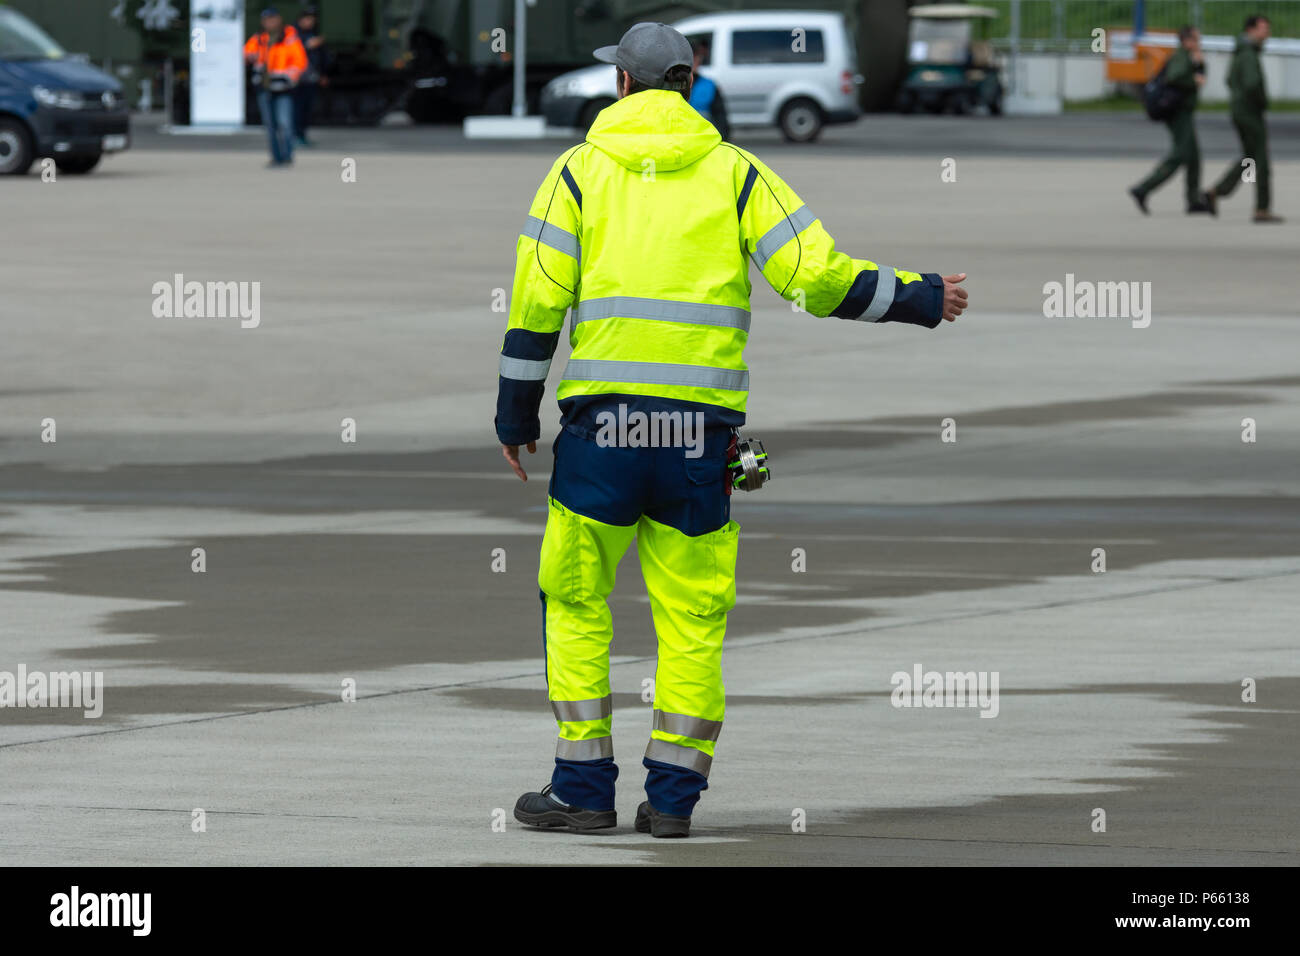 Ein Flight Safety Officer im Licht reflektierende Kleidung auf dem  Flugplatz Stockfotografie - Alamy